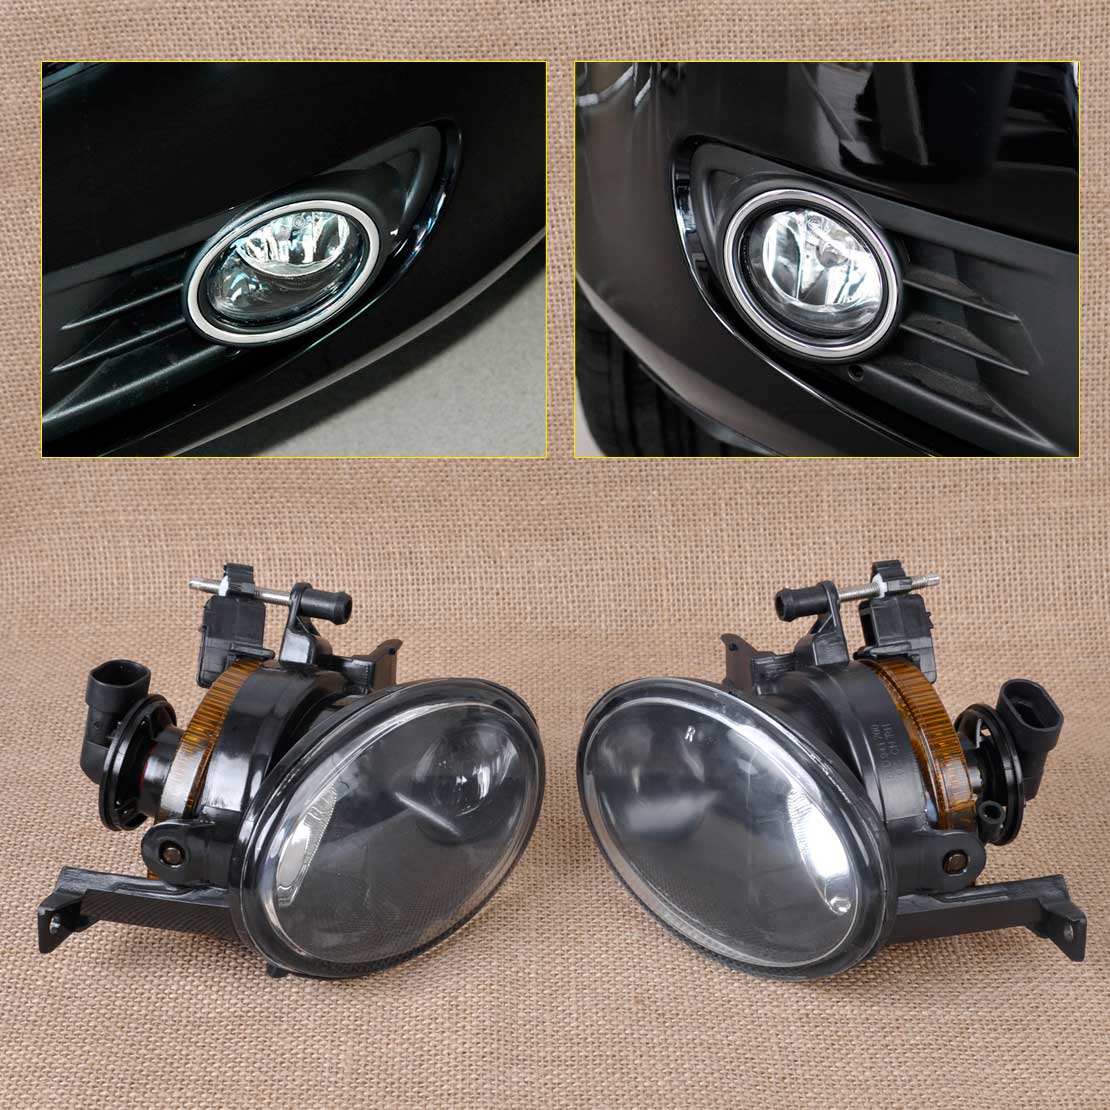 1 set New 5K0941700/5K0 941 699 Front Right+Left Bumper Convex Lens Fog Light for VW Golf Jetta MK6 Tiguan  Fog Lamp